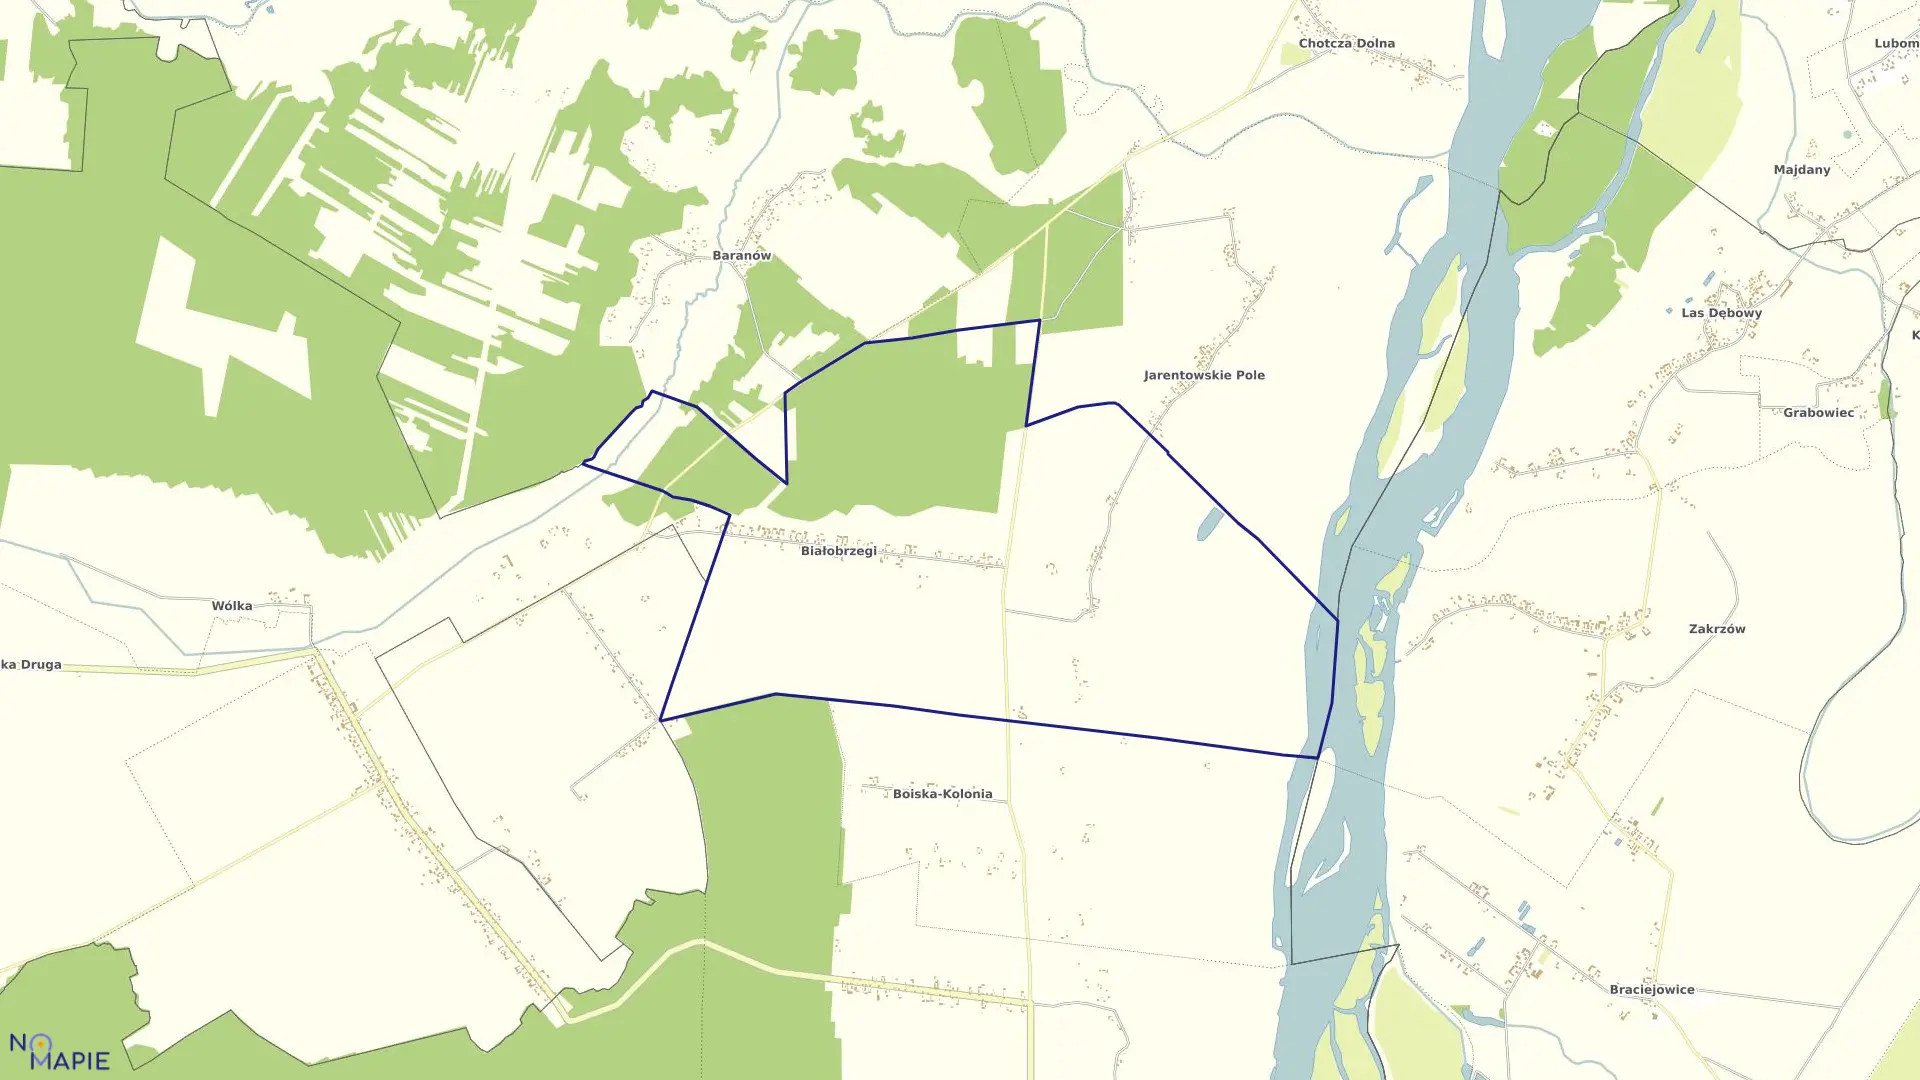 Mapa obrębu BIAŁOBRZEGI w gminie chotcza